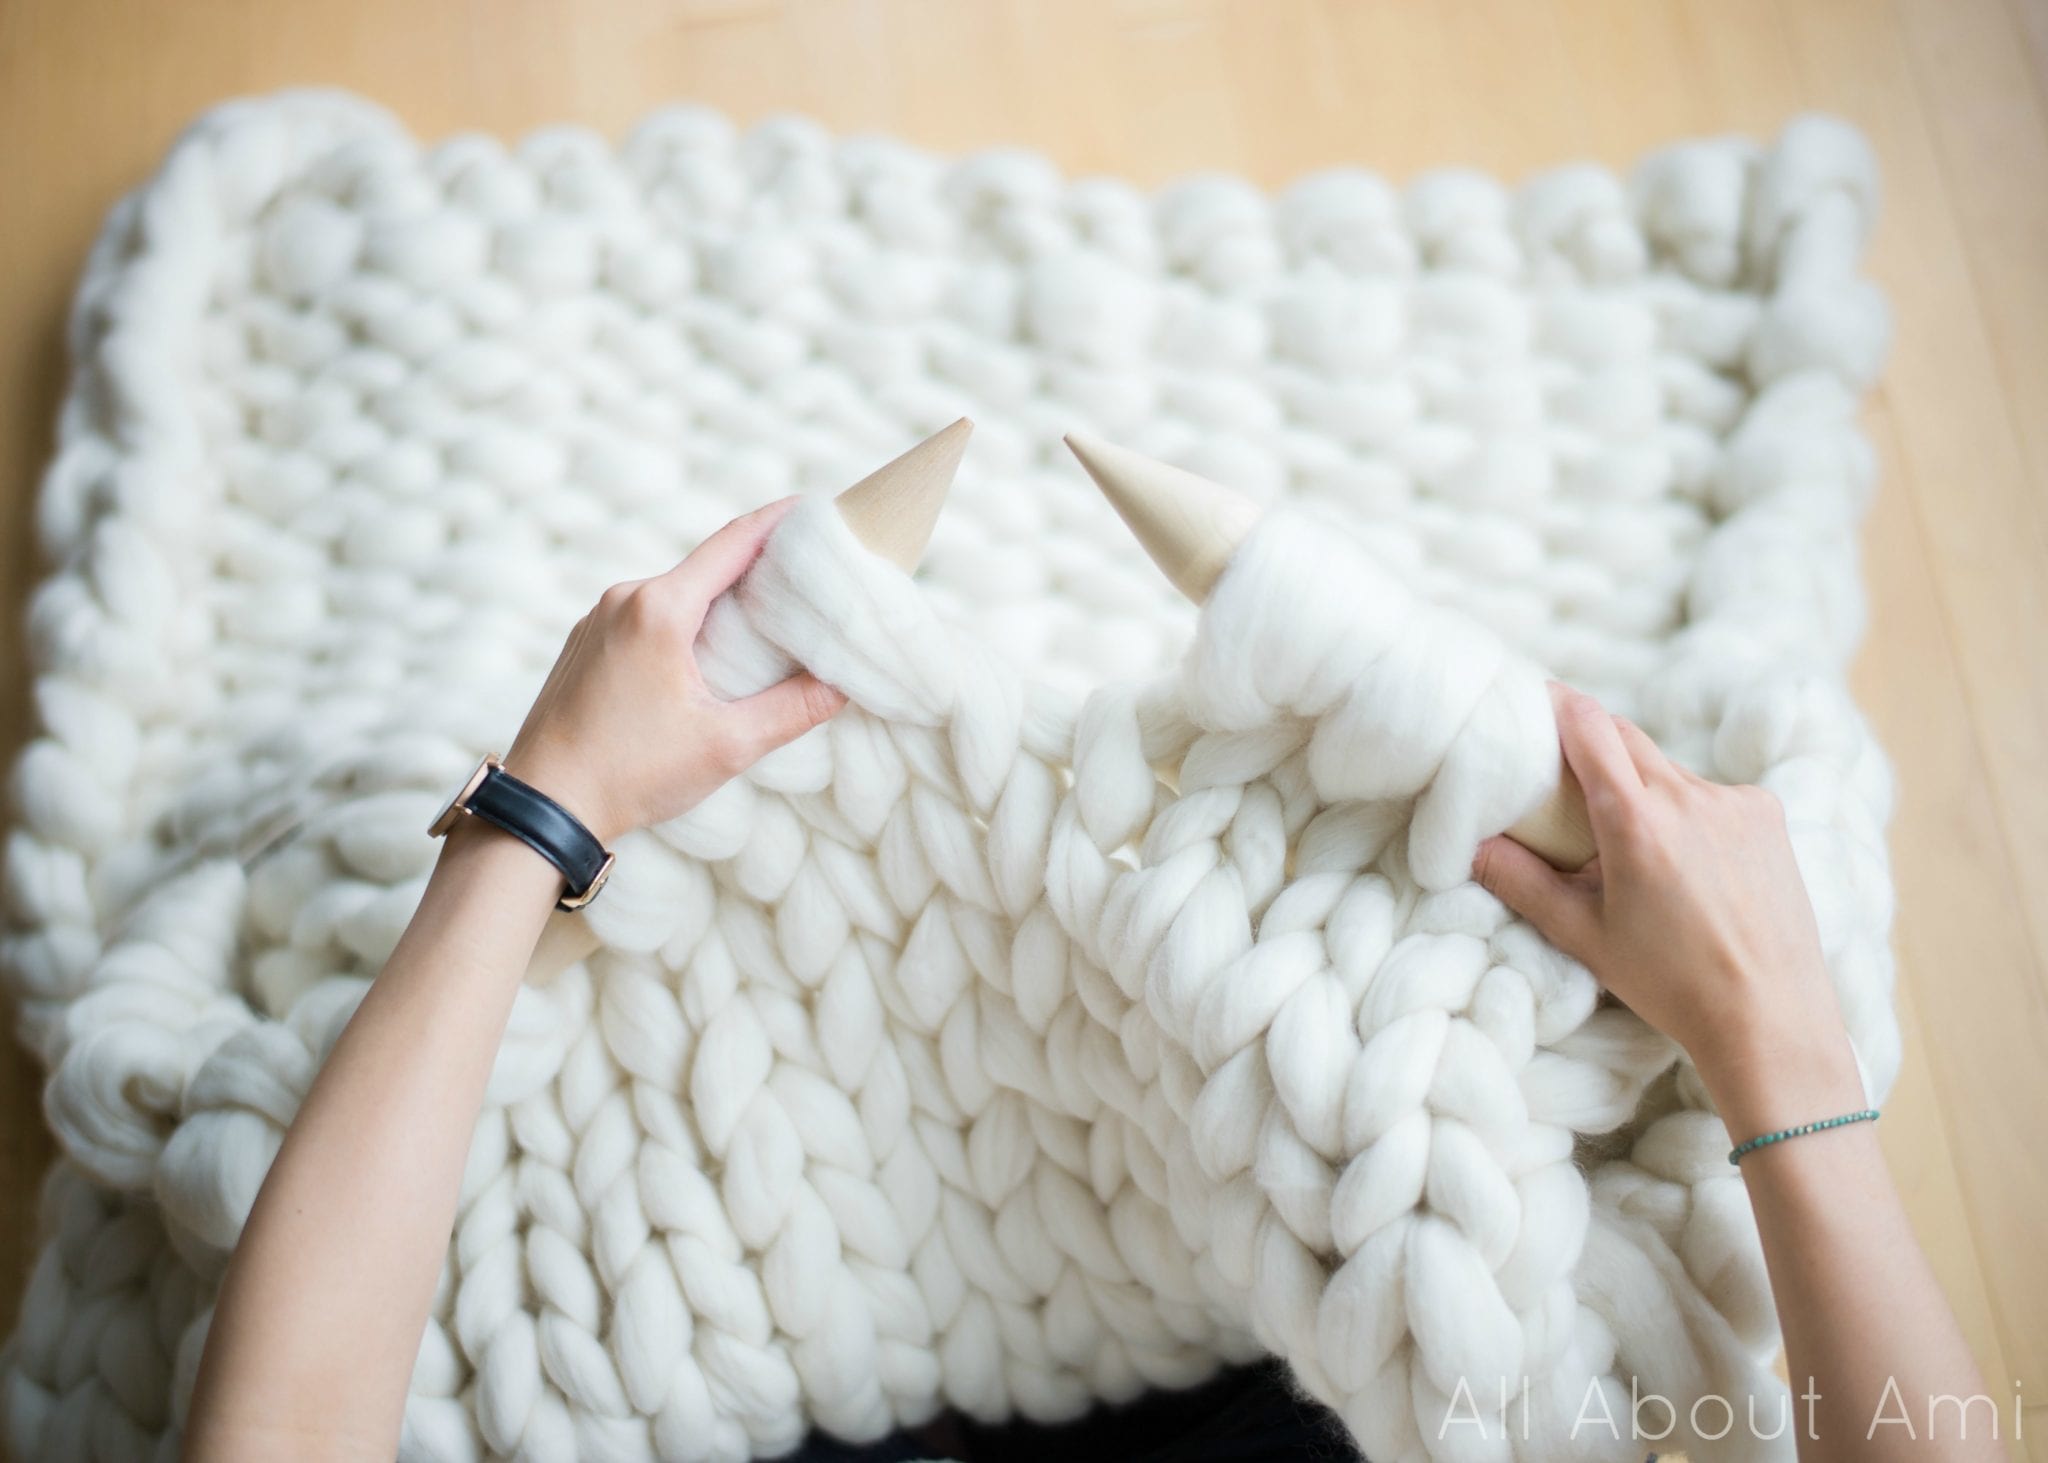 Káº¿t quáº£ hÃ¬nh áº£nh cho 1. Use circular needles (even when you're knitting flat)